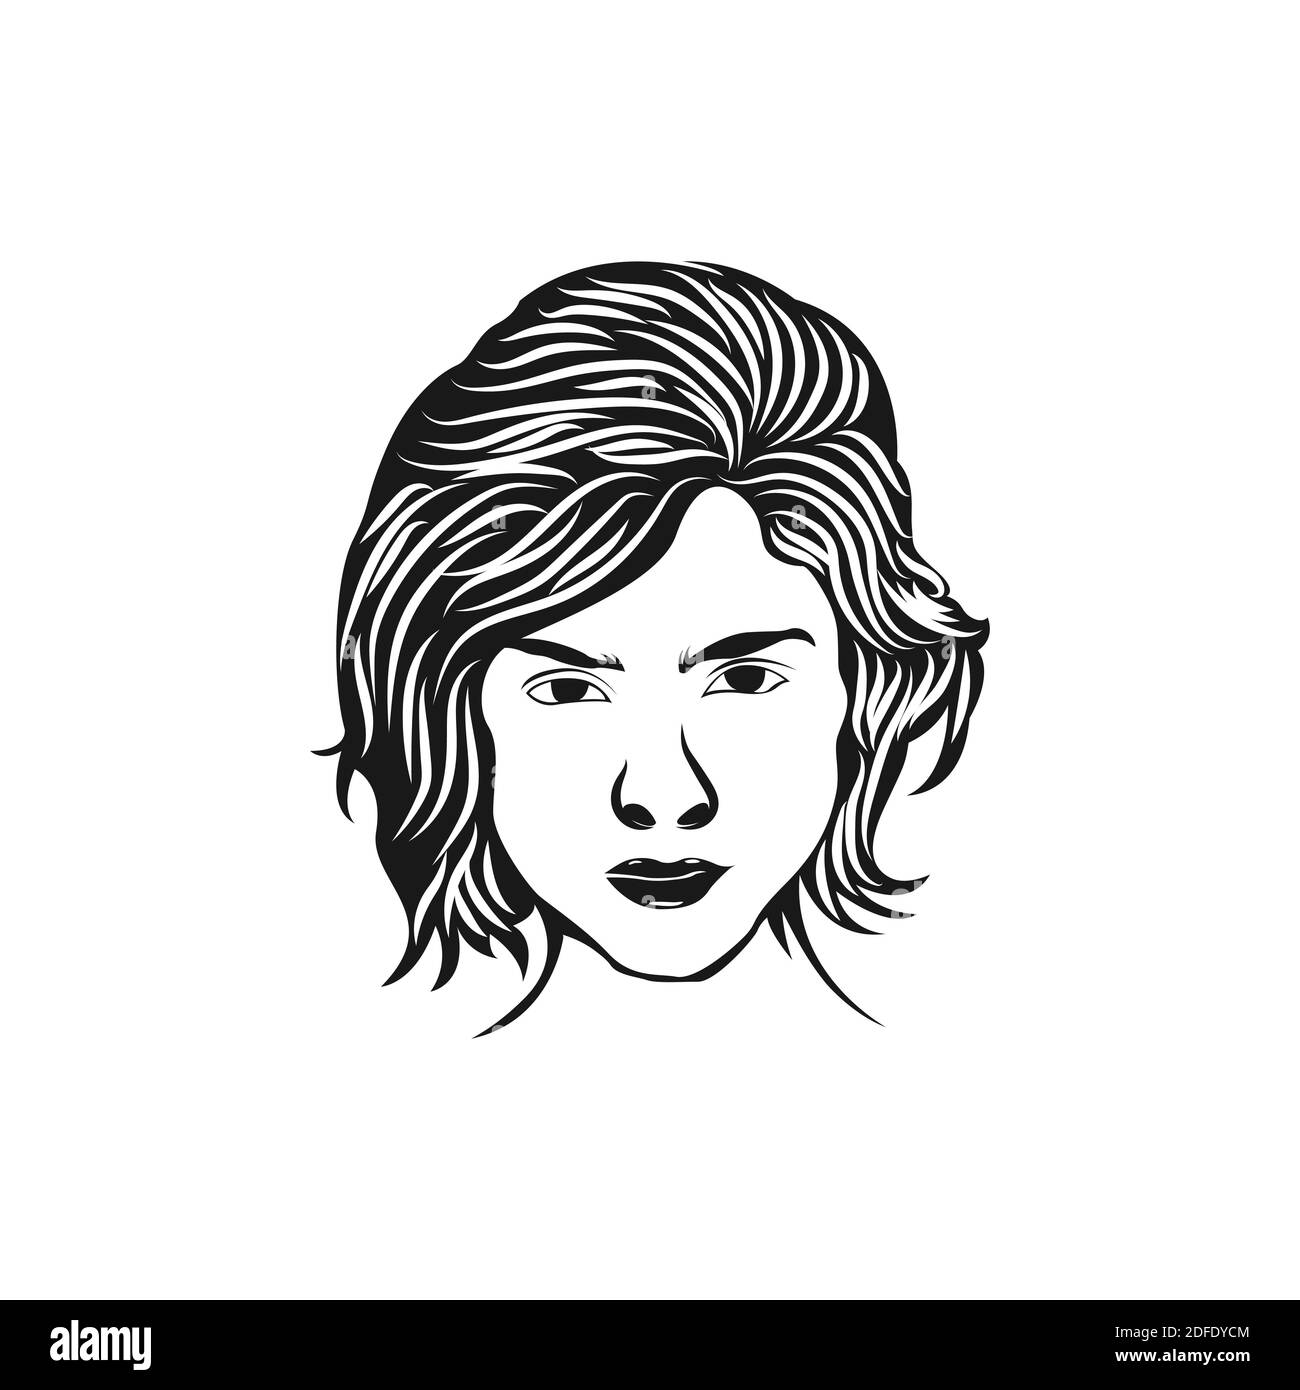 Illustrazione vettoriale avatar donna. Bella ragazza ritratto con diversi capelli stile isolato su sfondo bianco.EPS 10 Illustrazione Vettoriale